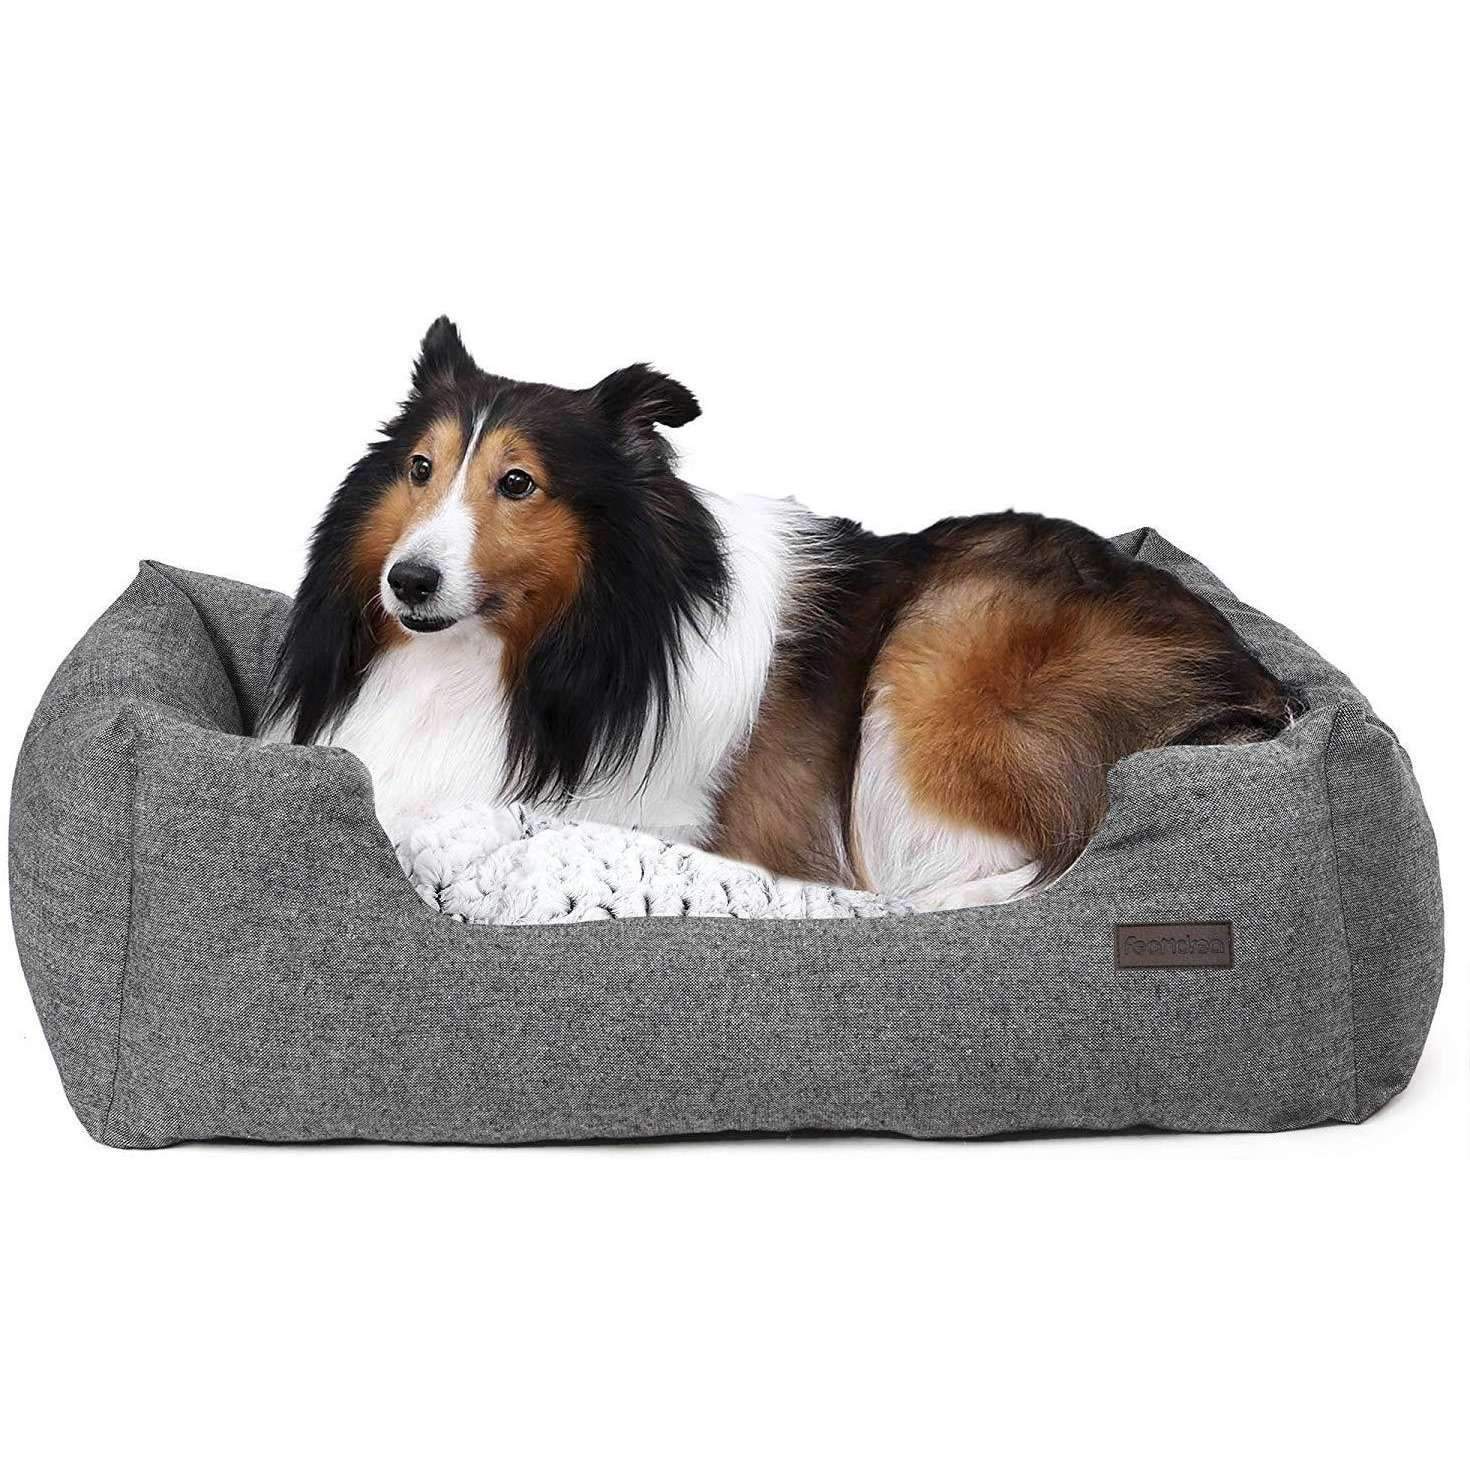 Nancy's - Luxe Hondenmand - Voor honden tot 20 KG - Comfortabele Hondensofa - 80 x 60 x 26 cm